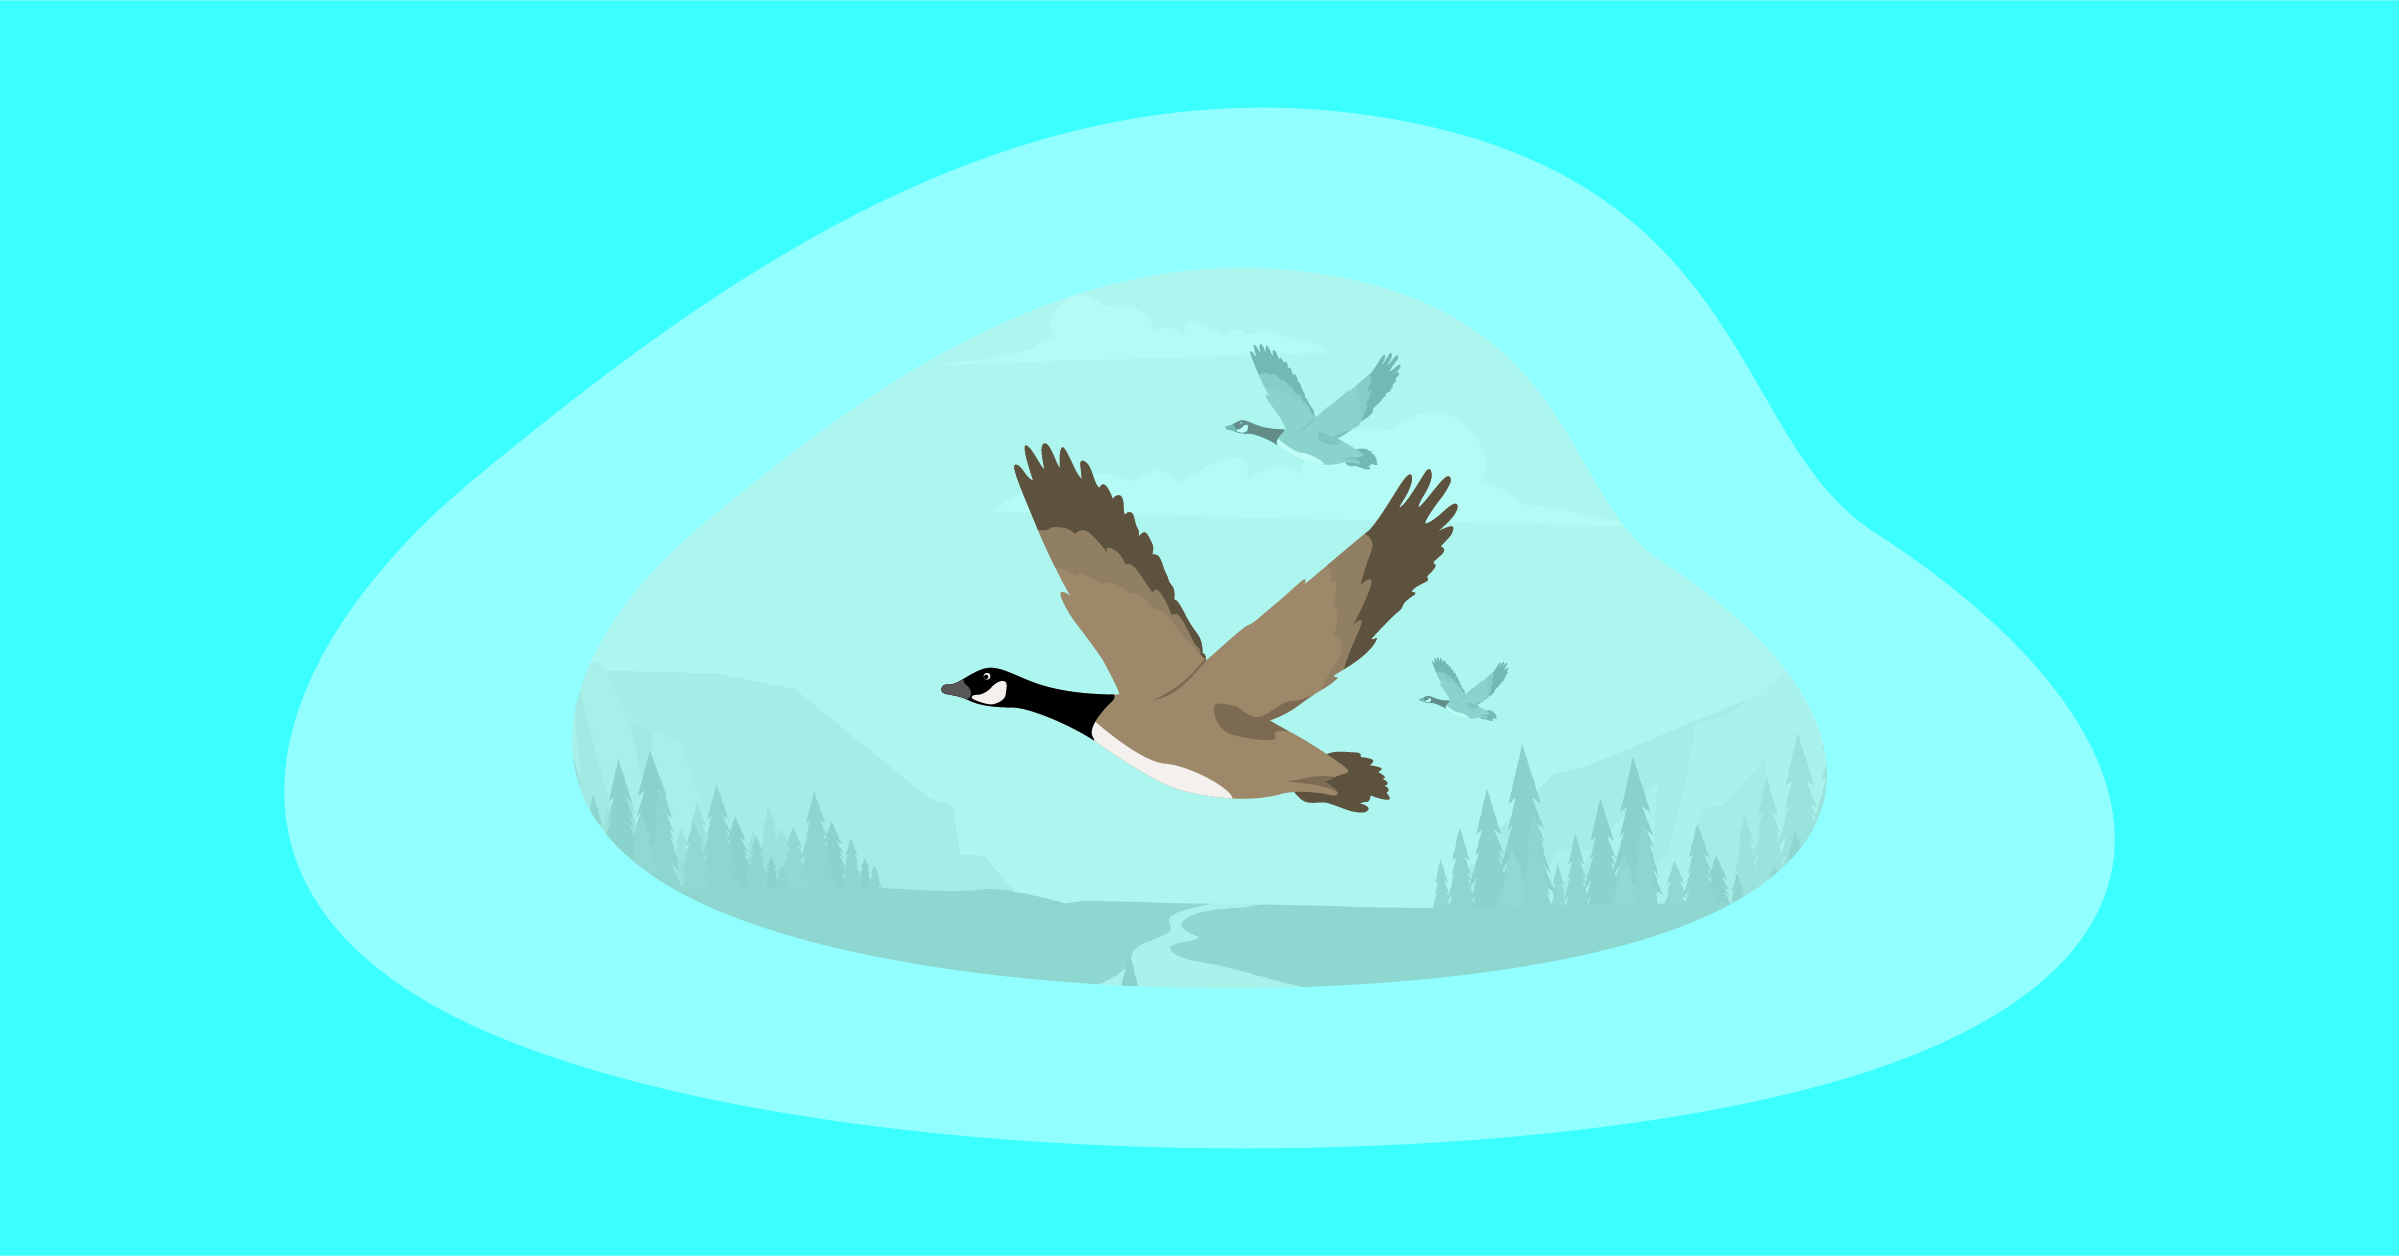 Illustration of flying birds